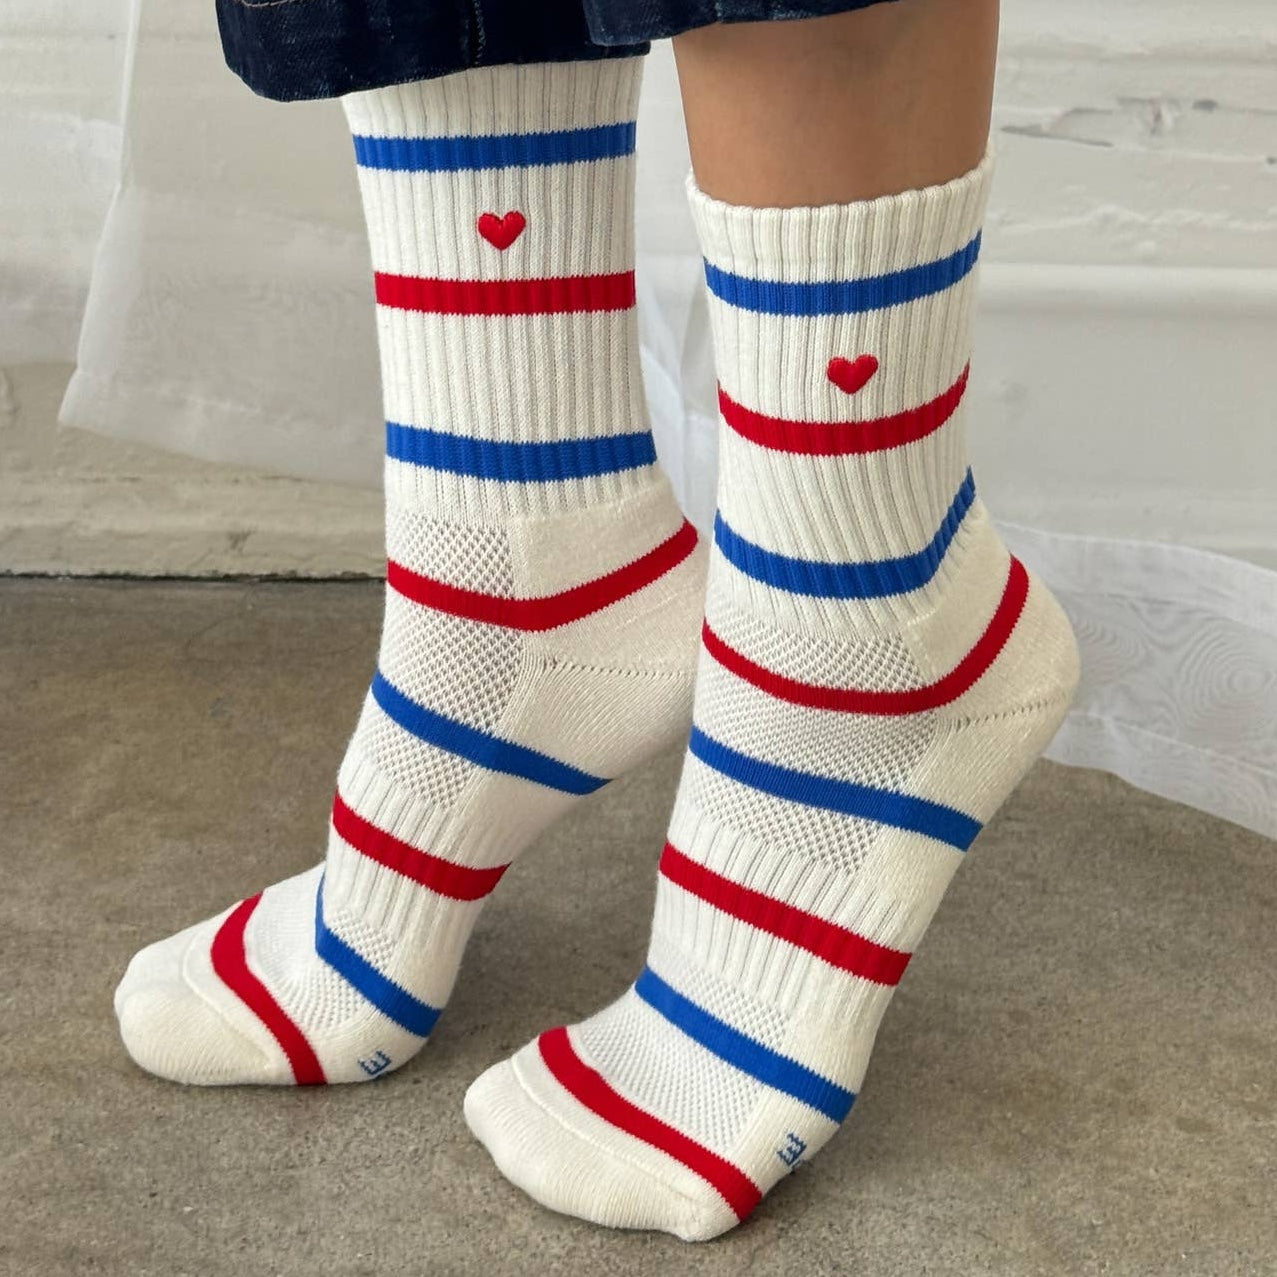 Socks by Le Bon Shoppe